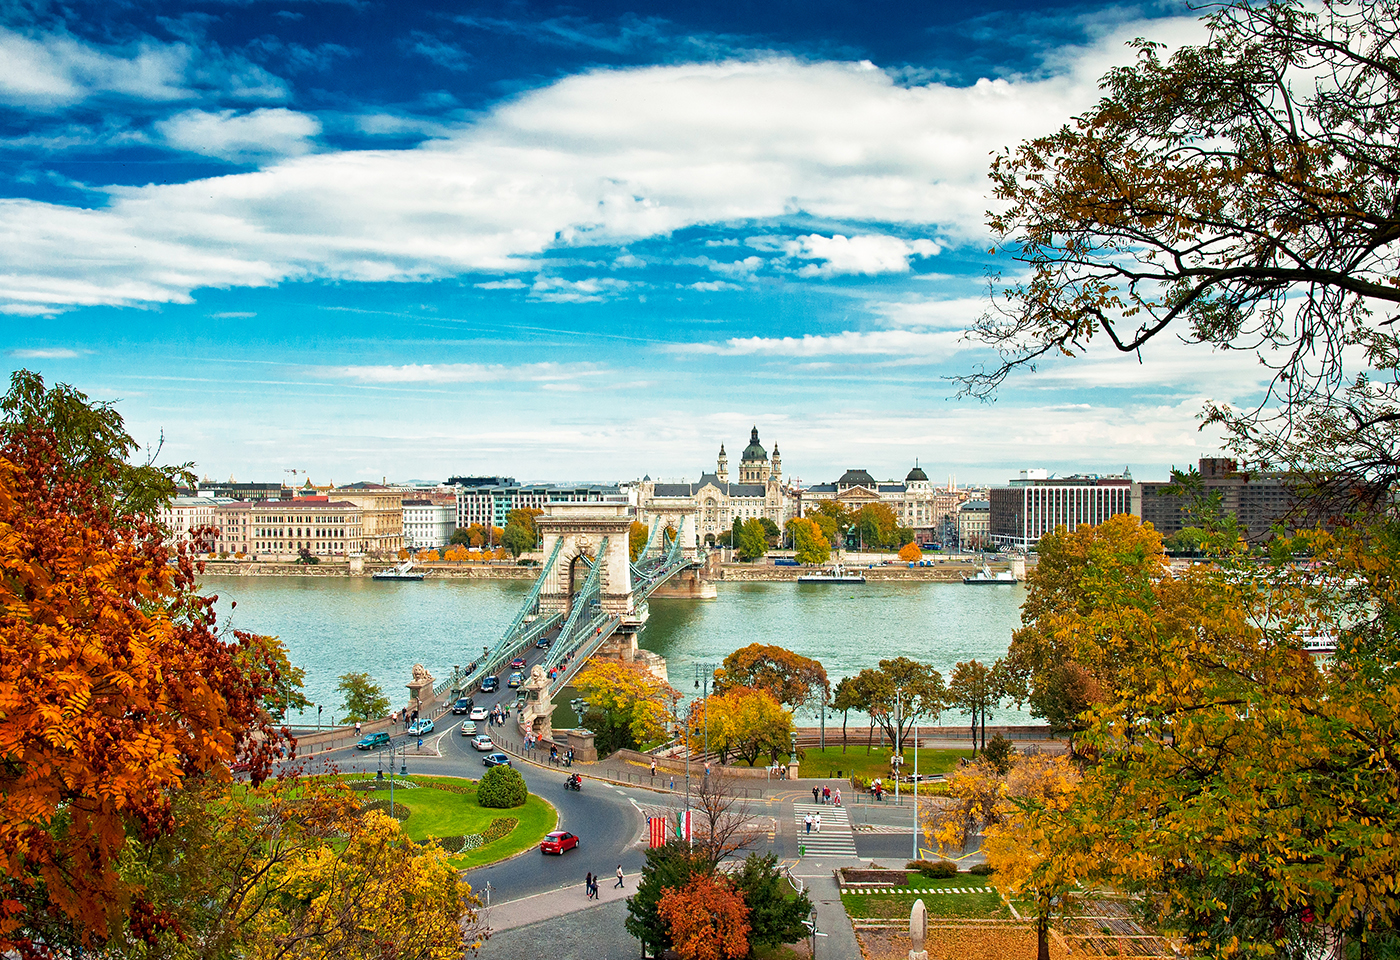 Organiza un viaje a Praga, Viena y Budapest por tu cuenta